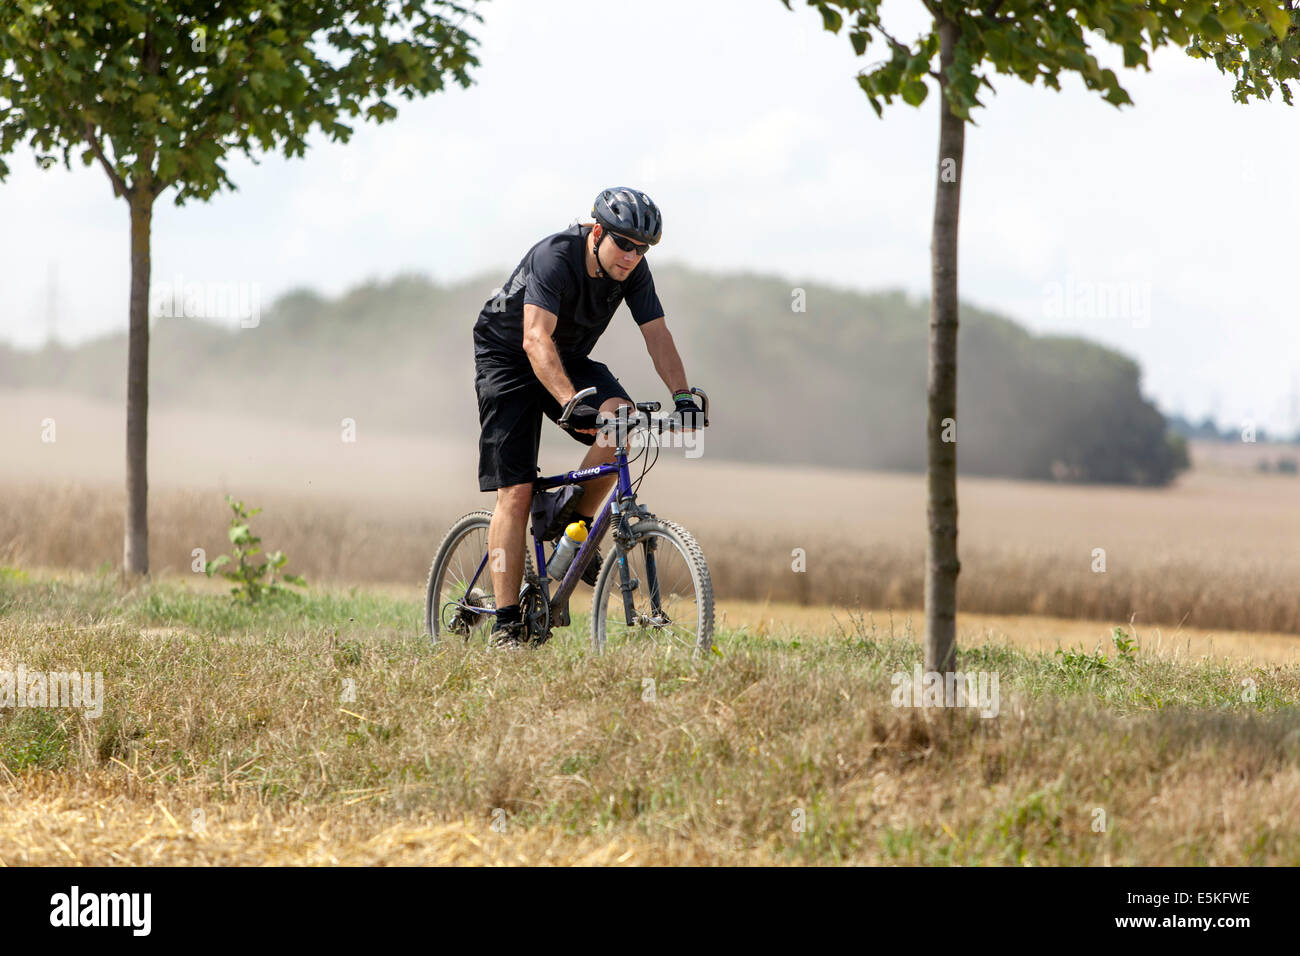 Cycliste en été Paysage République tchèque activité de loisirs homme vélo Banque D'Images